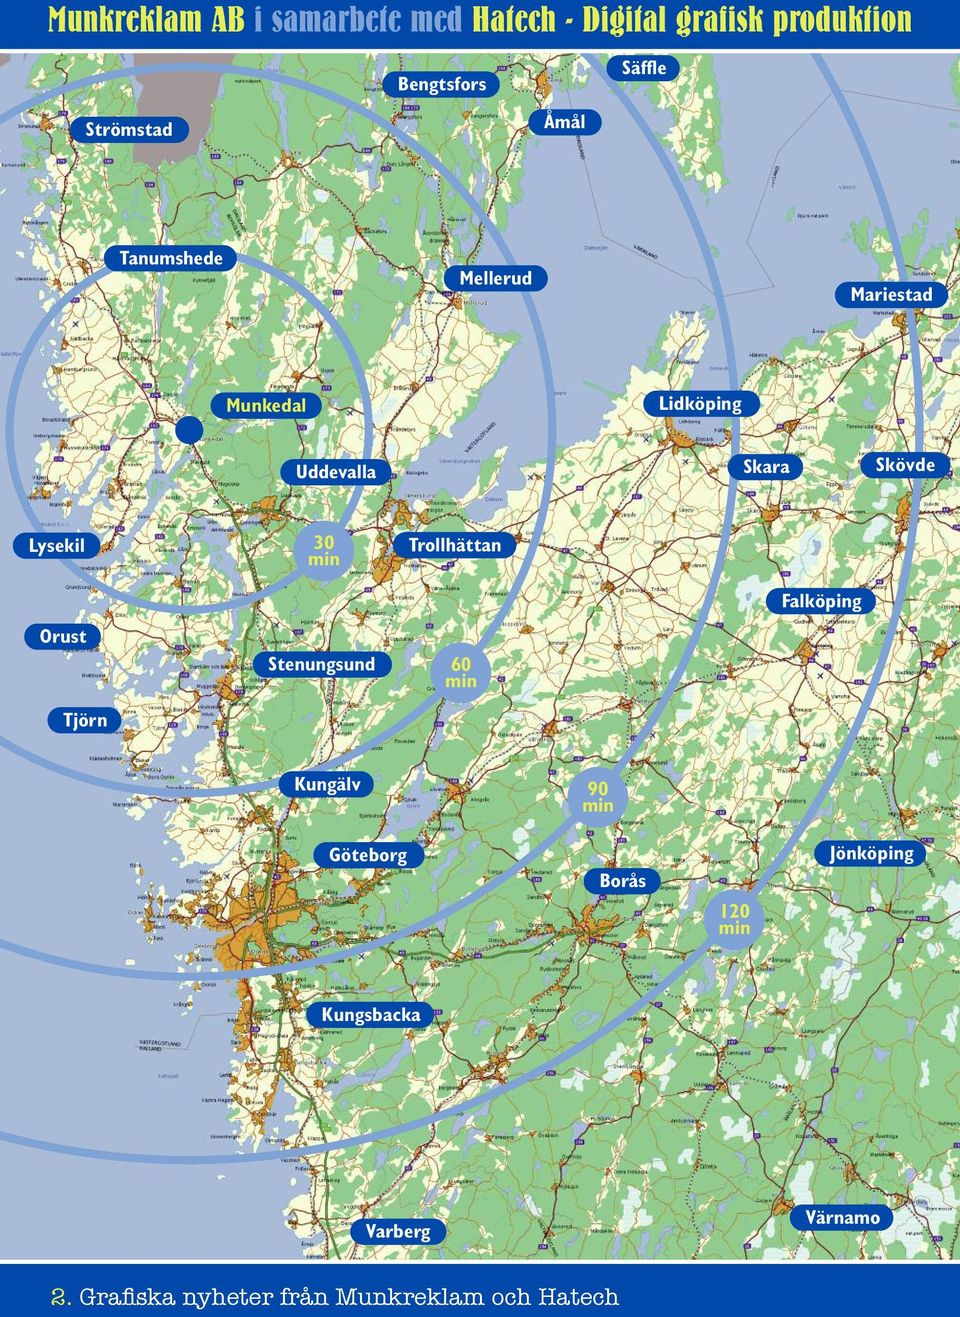 Lysekil 30 min Trollhättan Falköping Orust Stenungsund 60 min Tjörn Kungälv 90 min